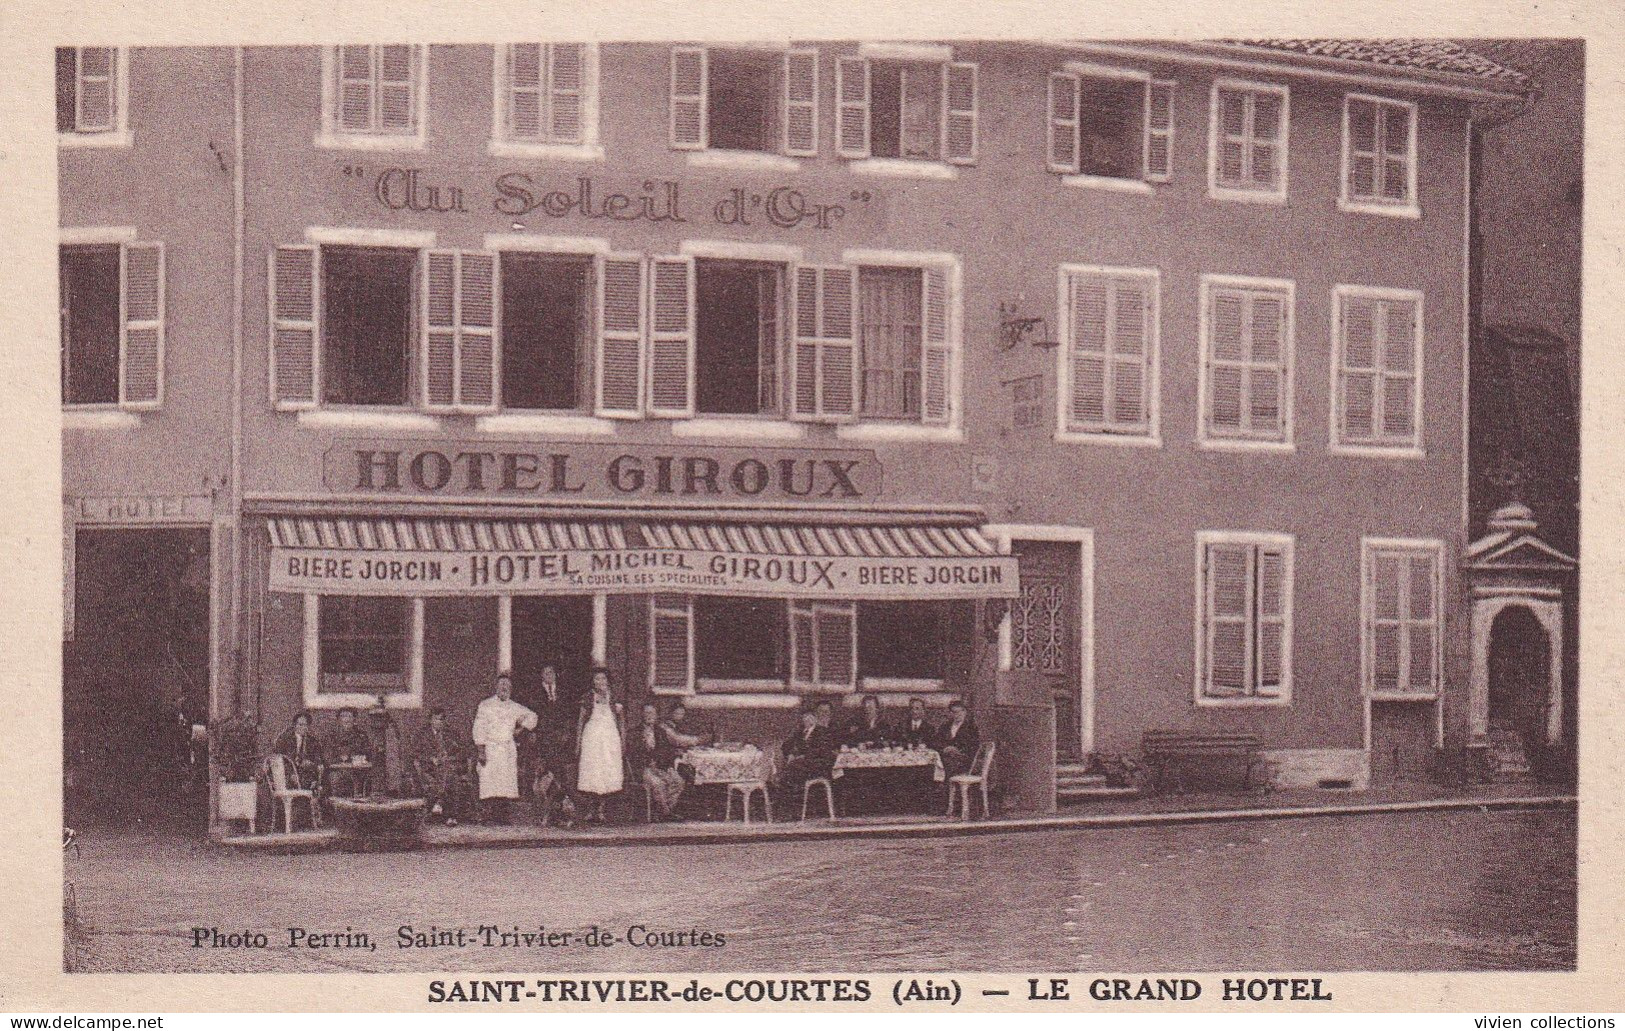 Saint Trivier De Courtes (01 Ain) Le Grand Hôtel Michel Giroux Au Soleil D'Or Bière Jorcin - Phot. Perrin - Unclassified